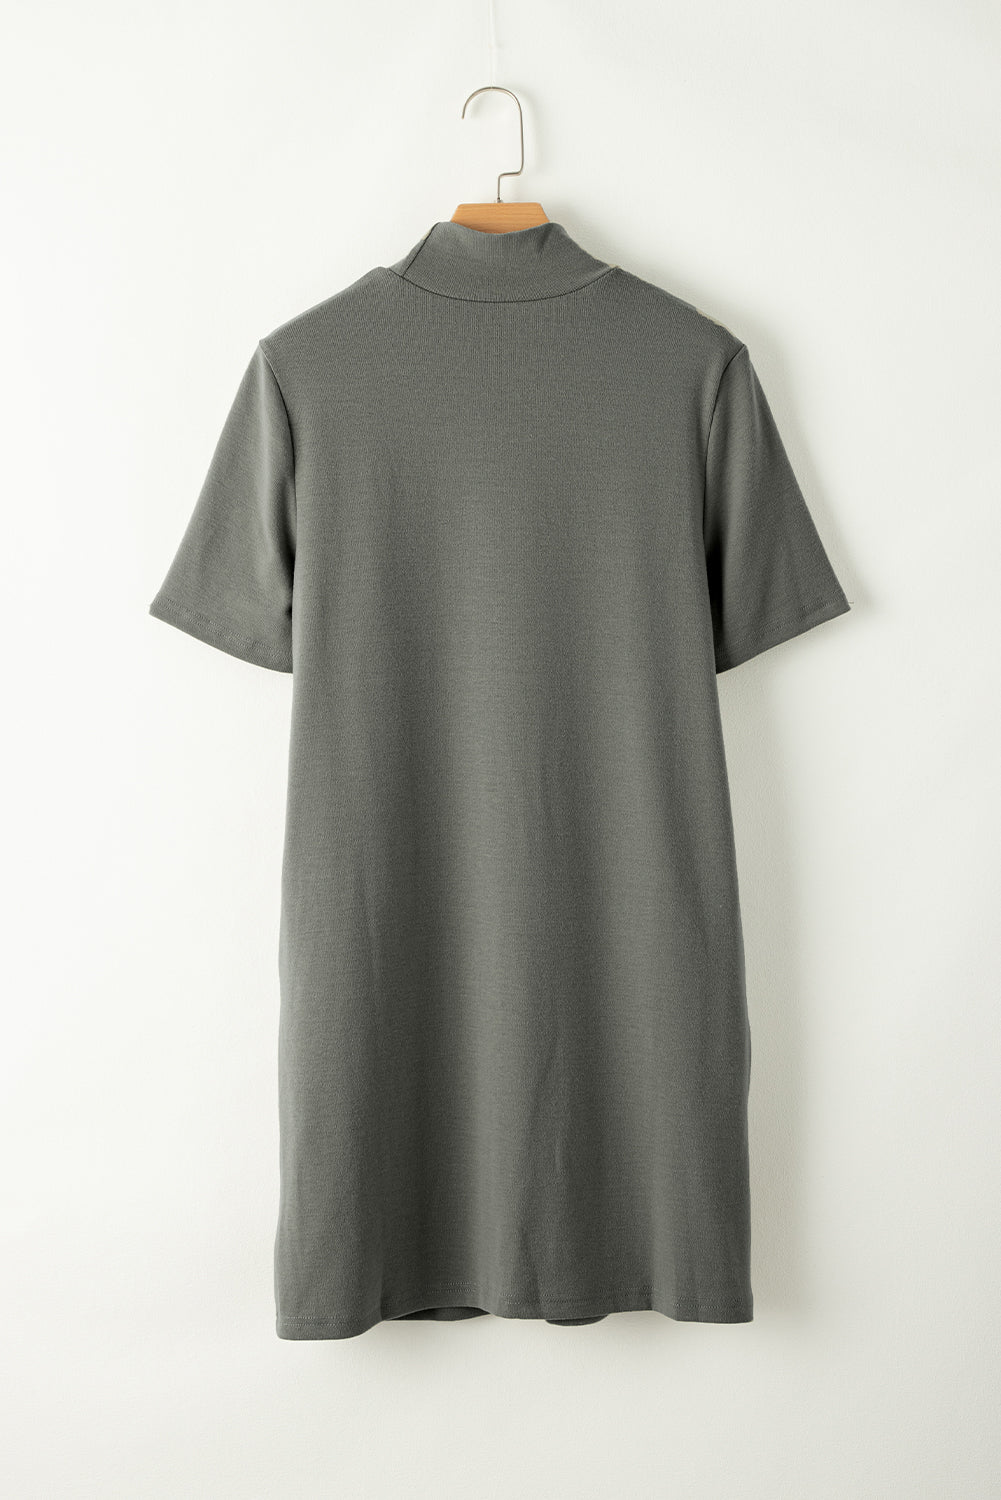 Laurel Green High Neck Cross Seam T-shirt Dress